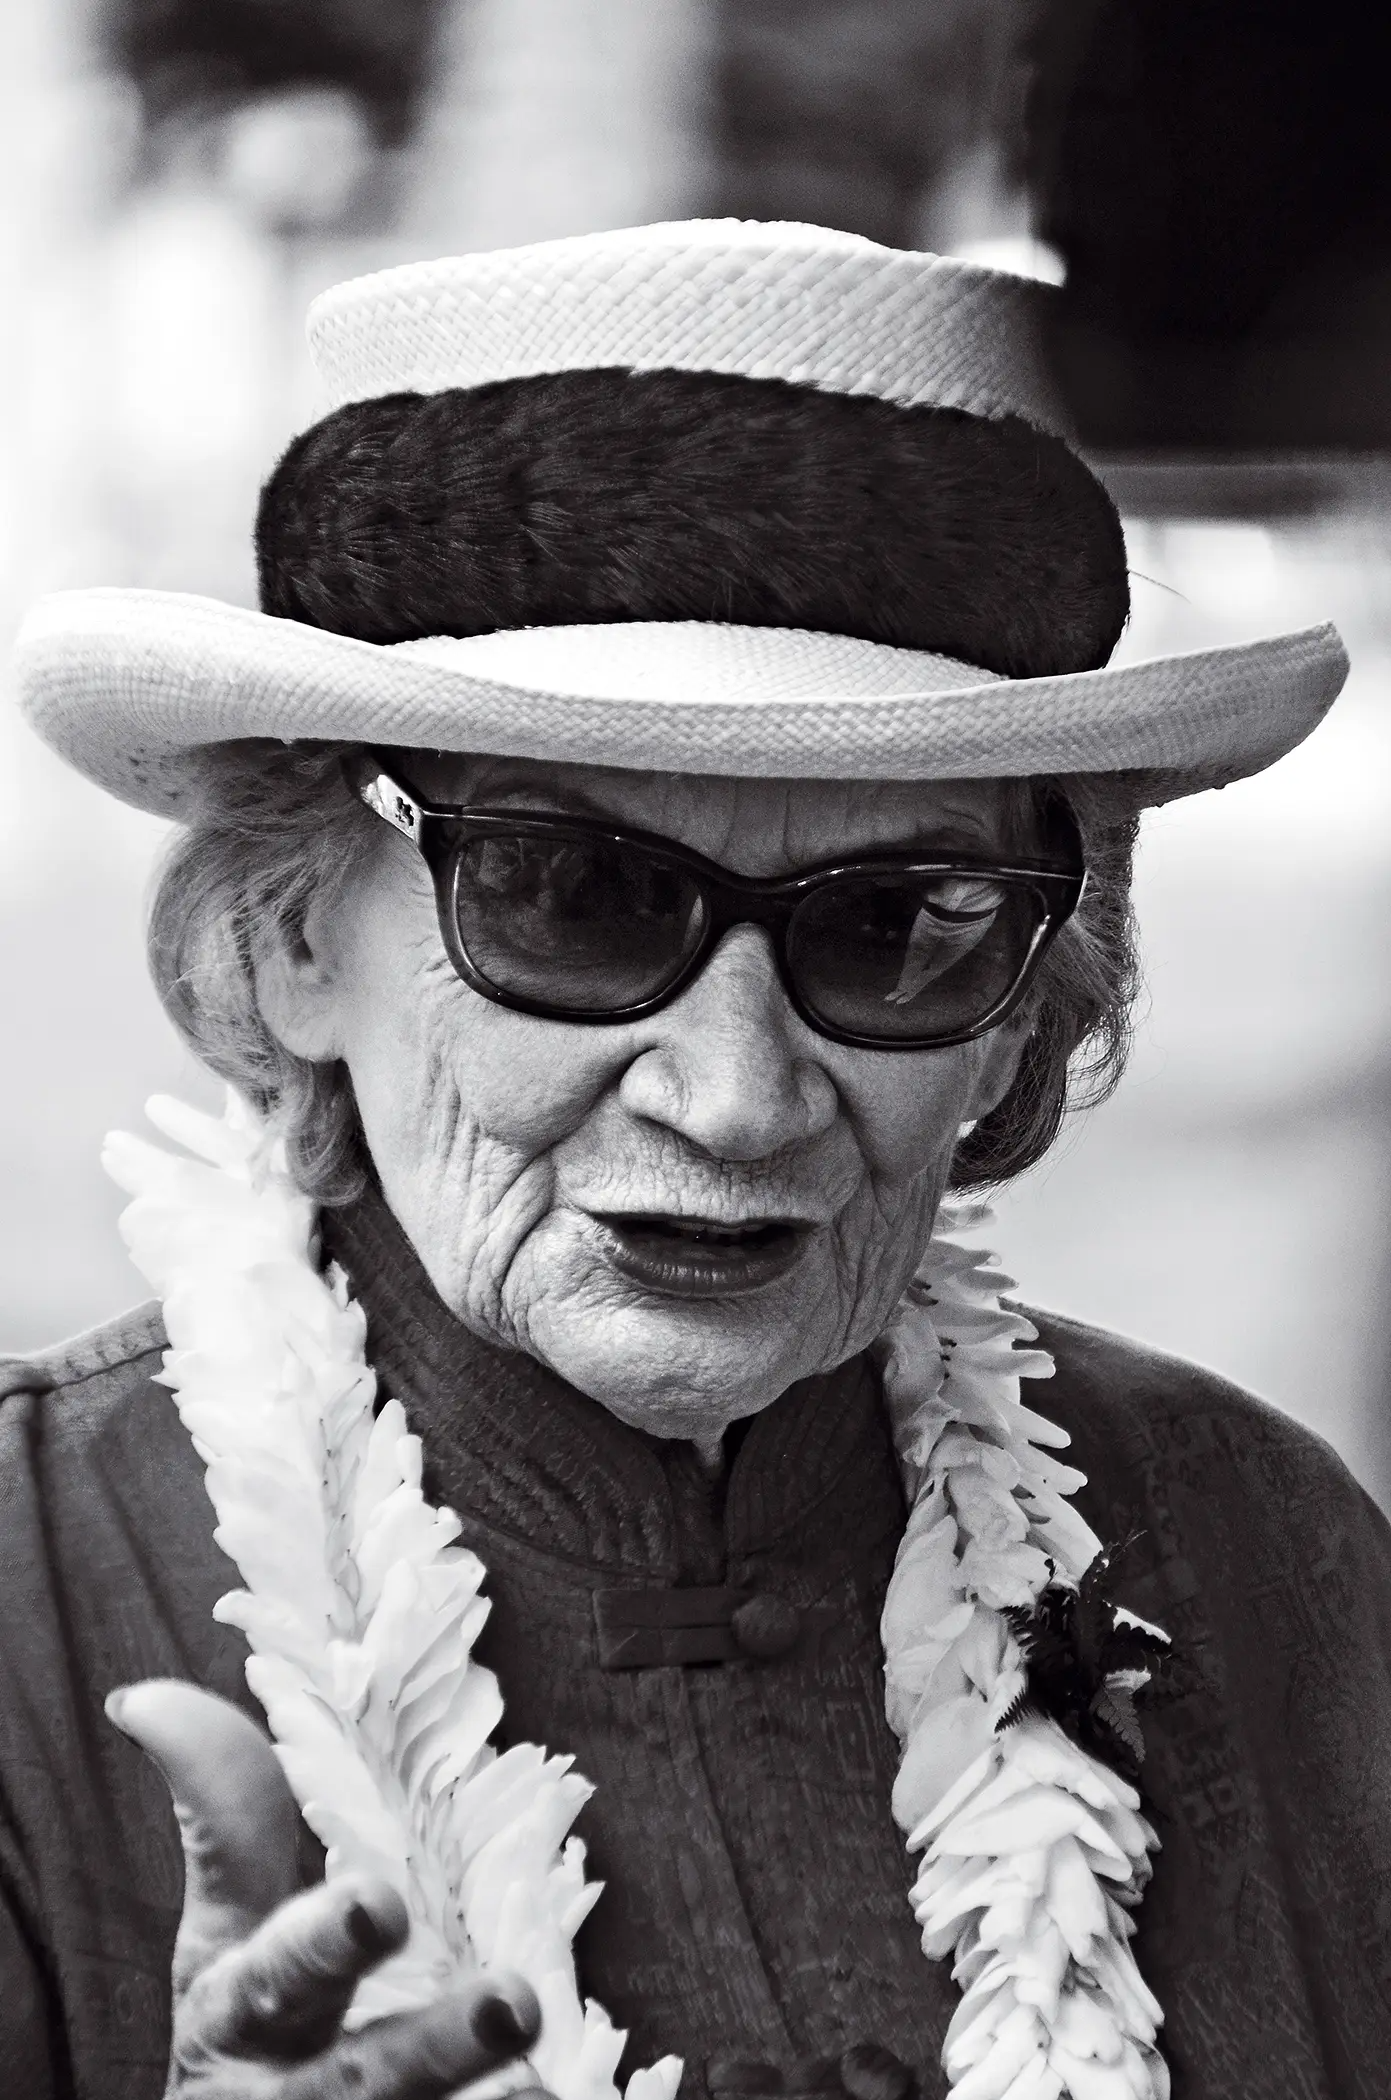 Abigail Kawananakoa, a última princesa do Havai que casou com a sua namorada aos 93 anos (1926-2022)